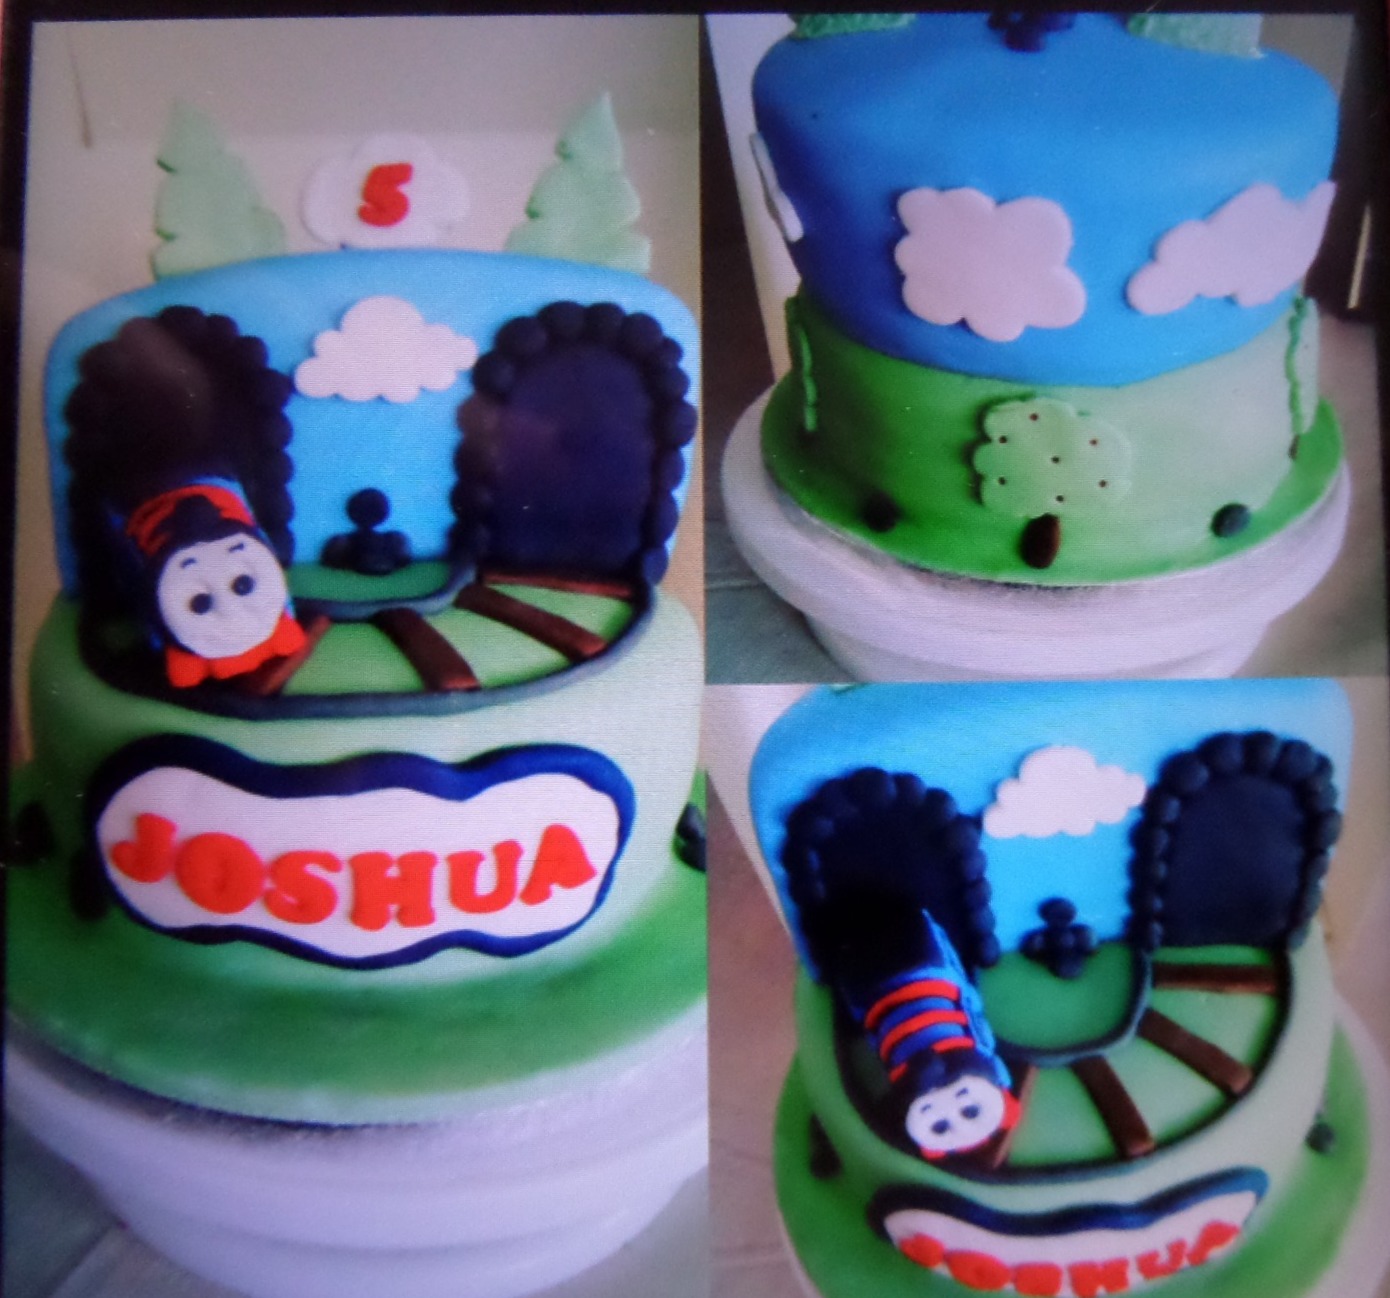 3 view image of "Thomas" cake